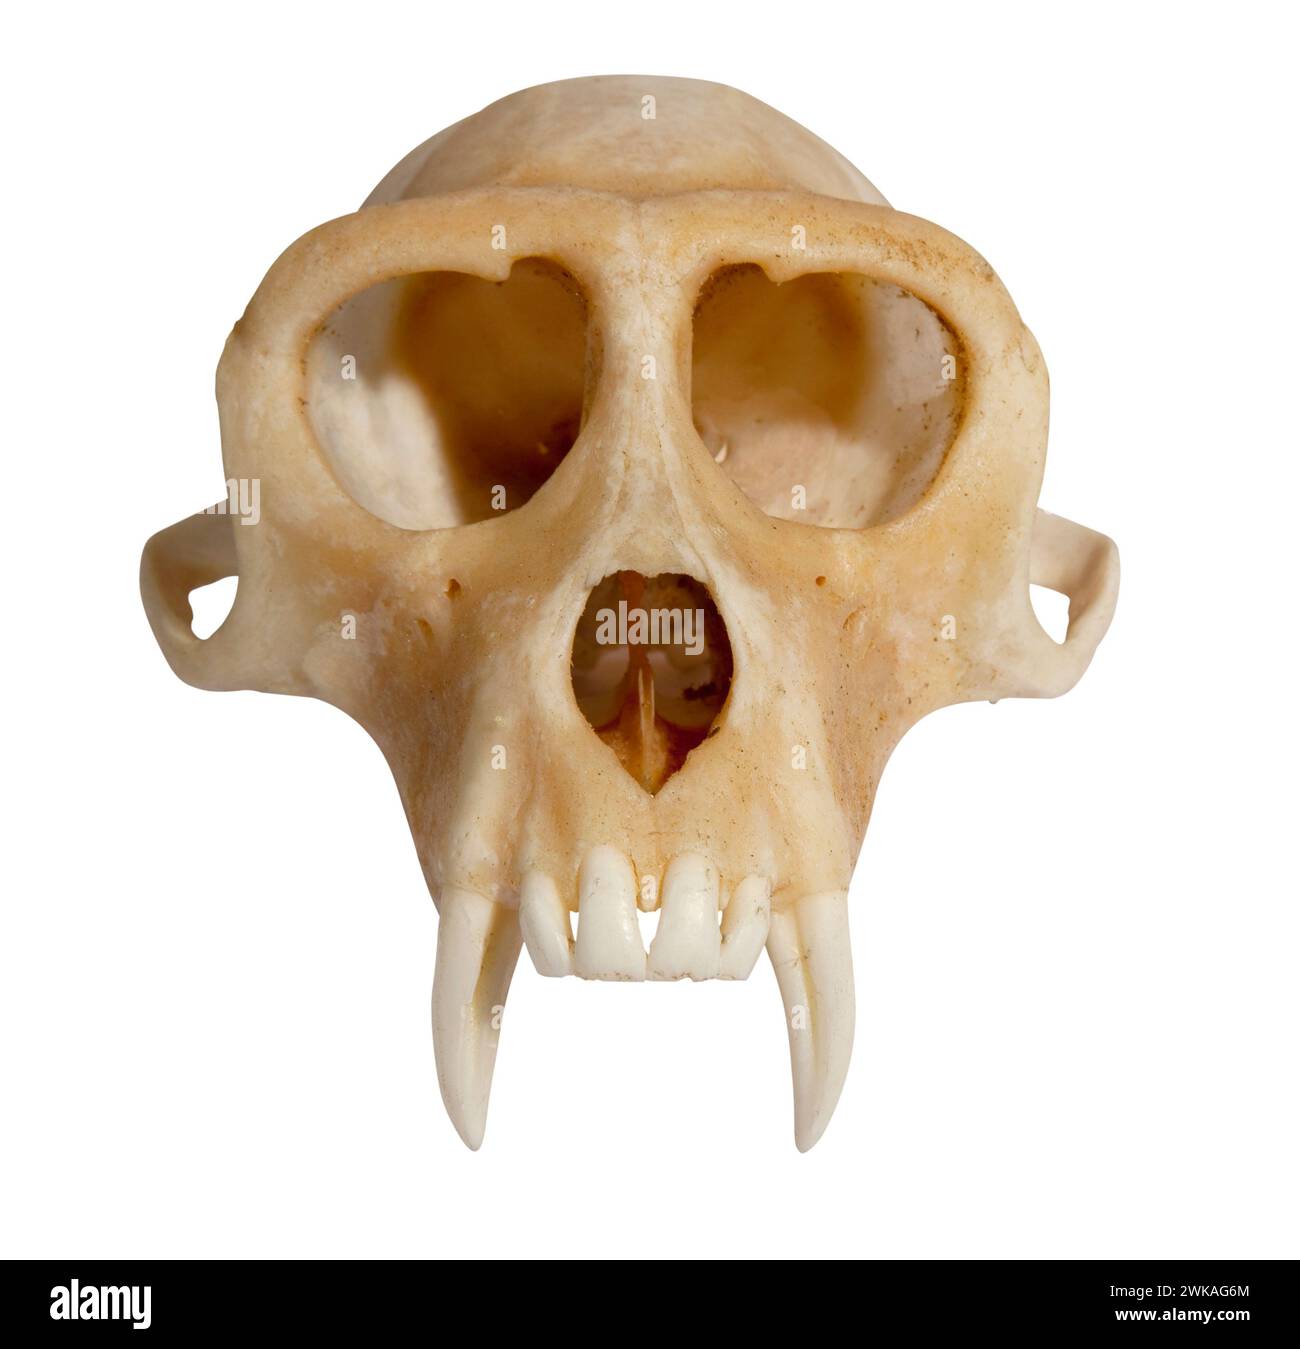 cranio della mascella superiore di un animale isolato sulla vista frontale bianca Foto Stock